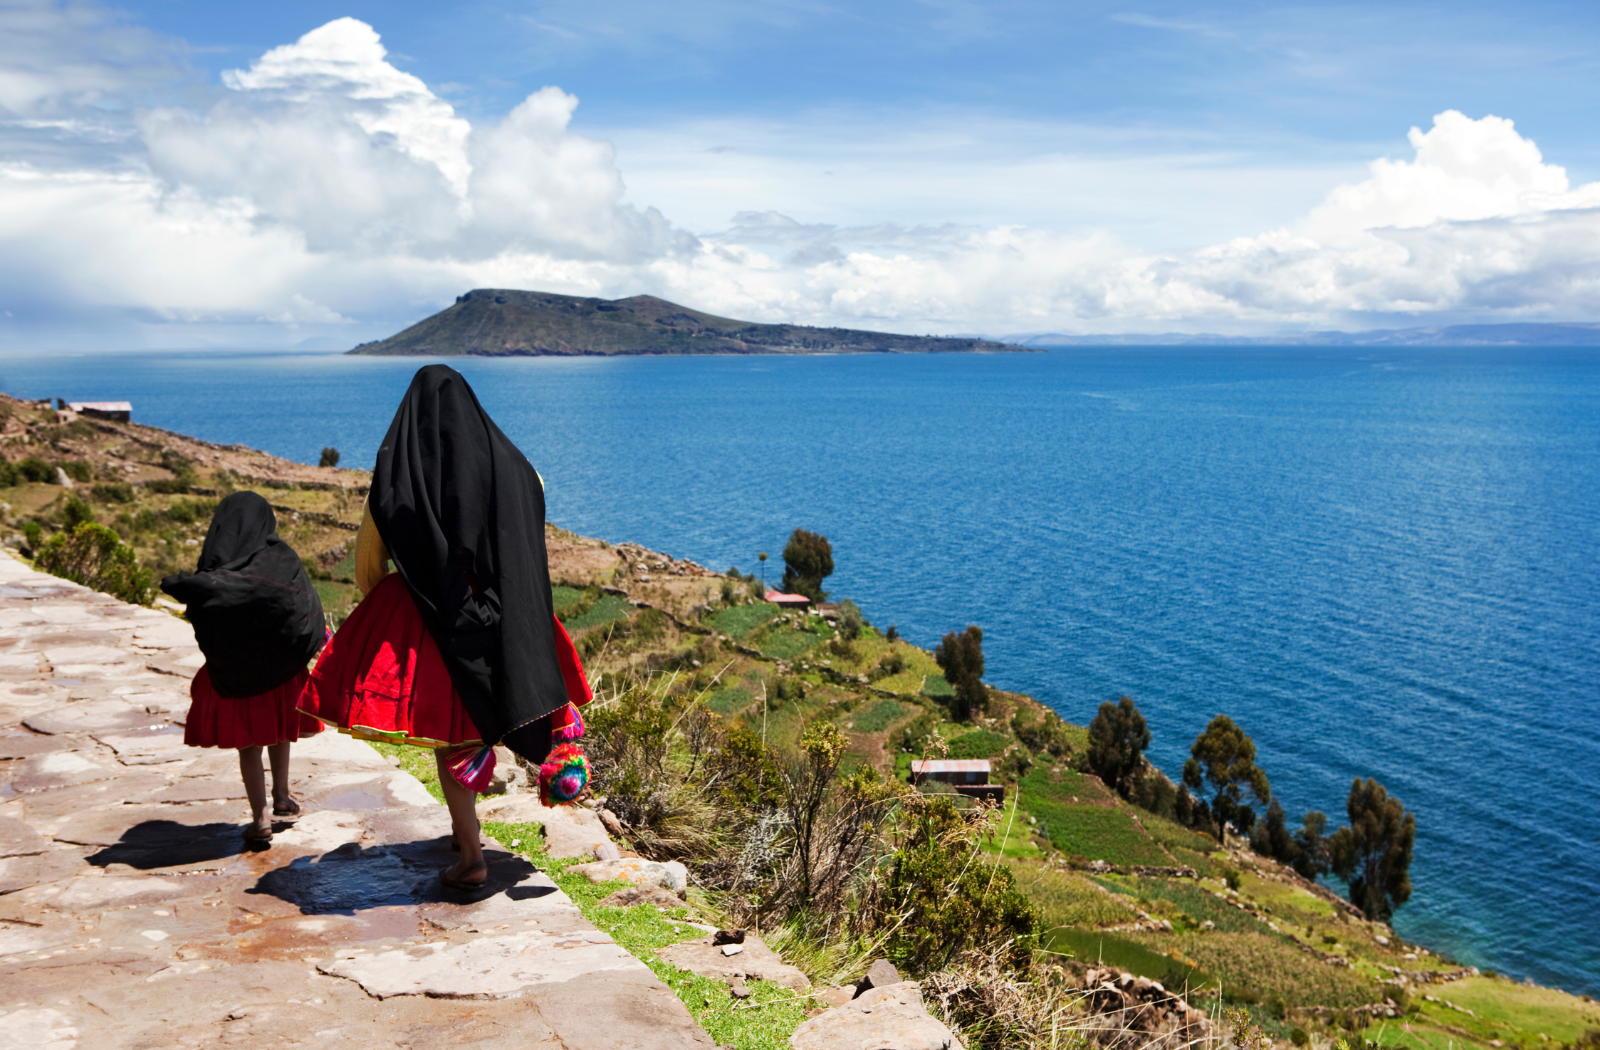 Lake Titicaca, Peru